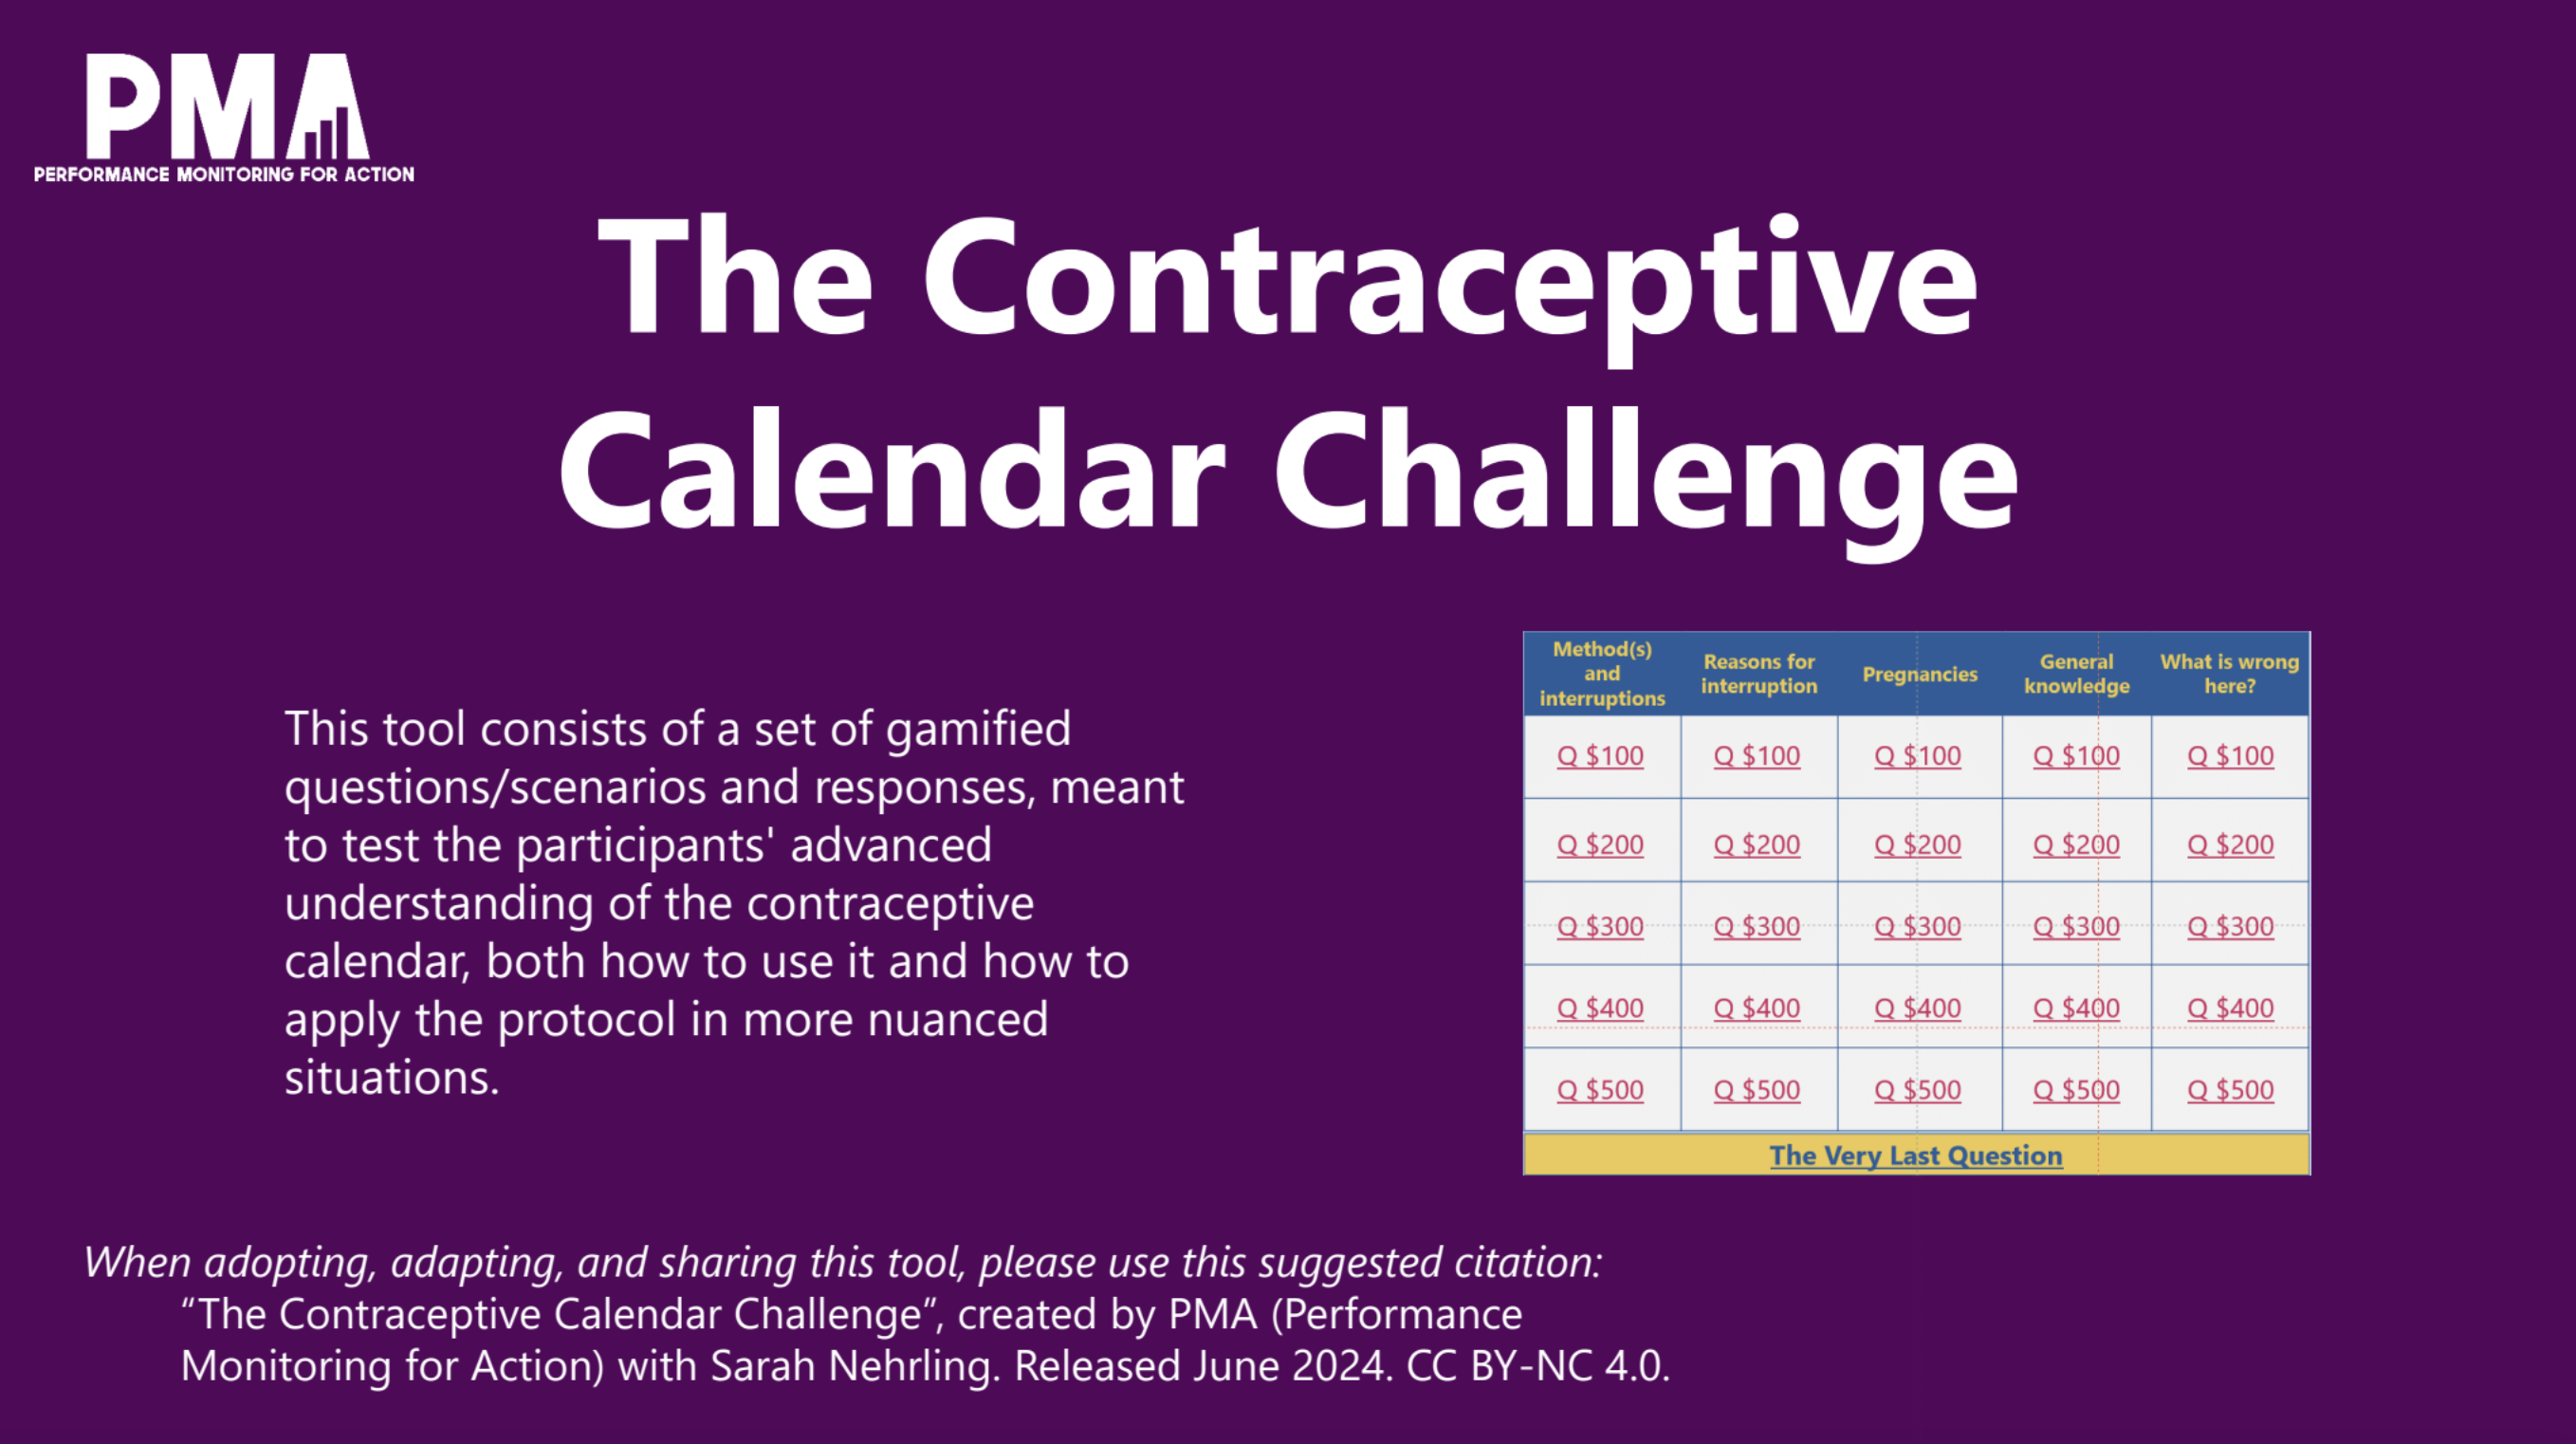 El reto del calendario anticonceptivo